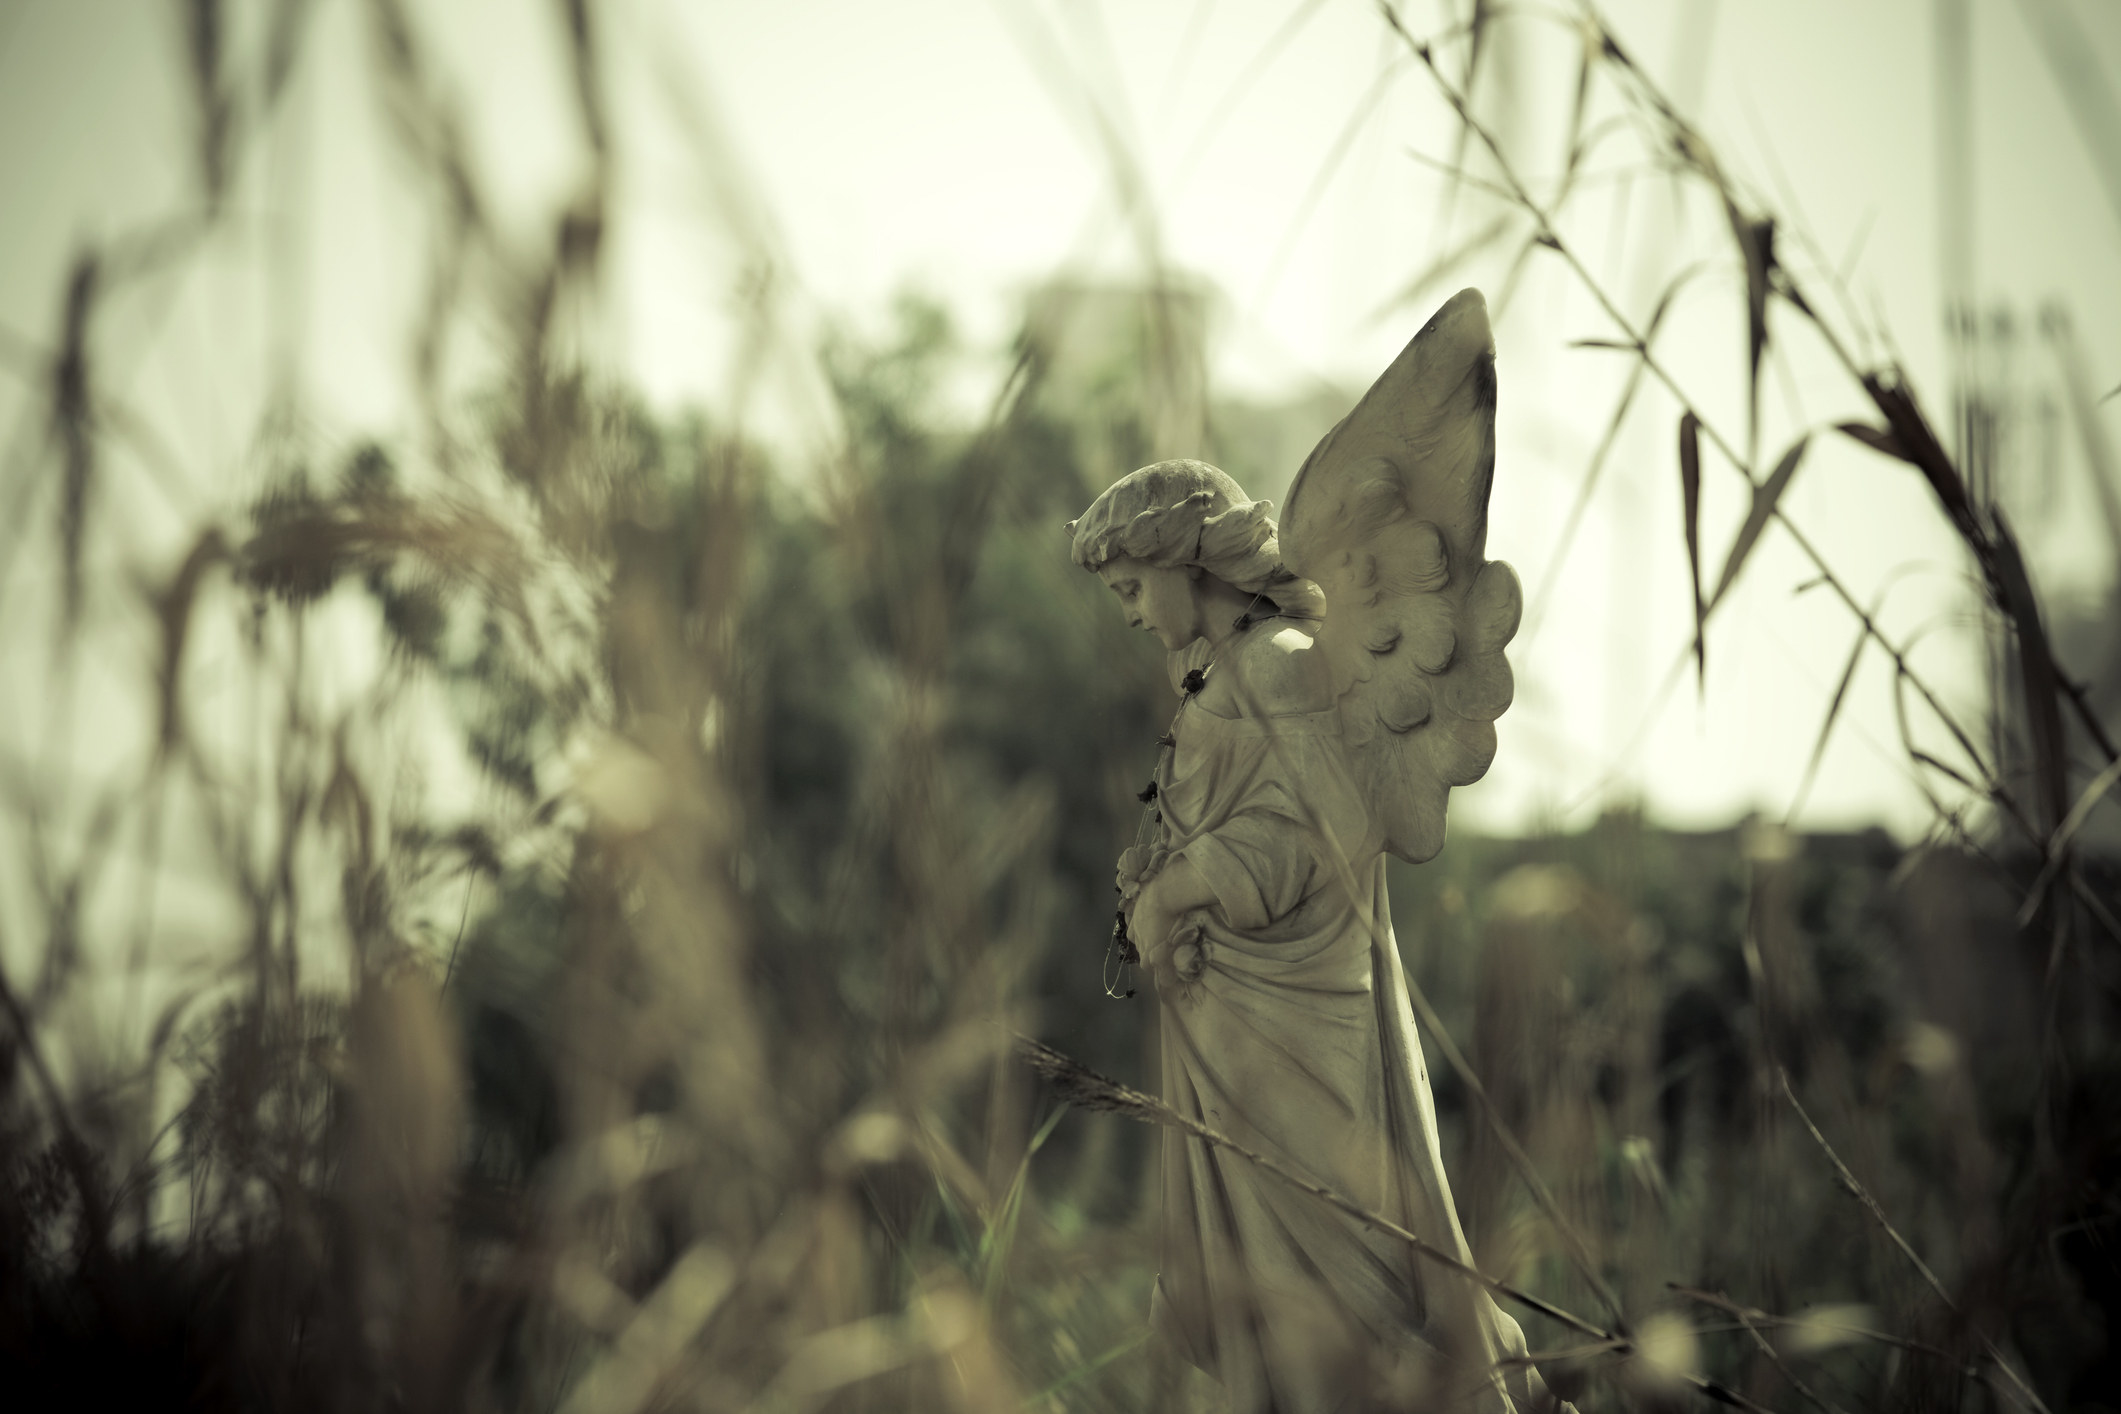 Broken angel statue